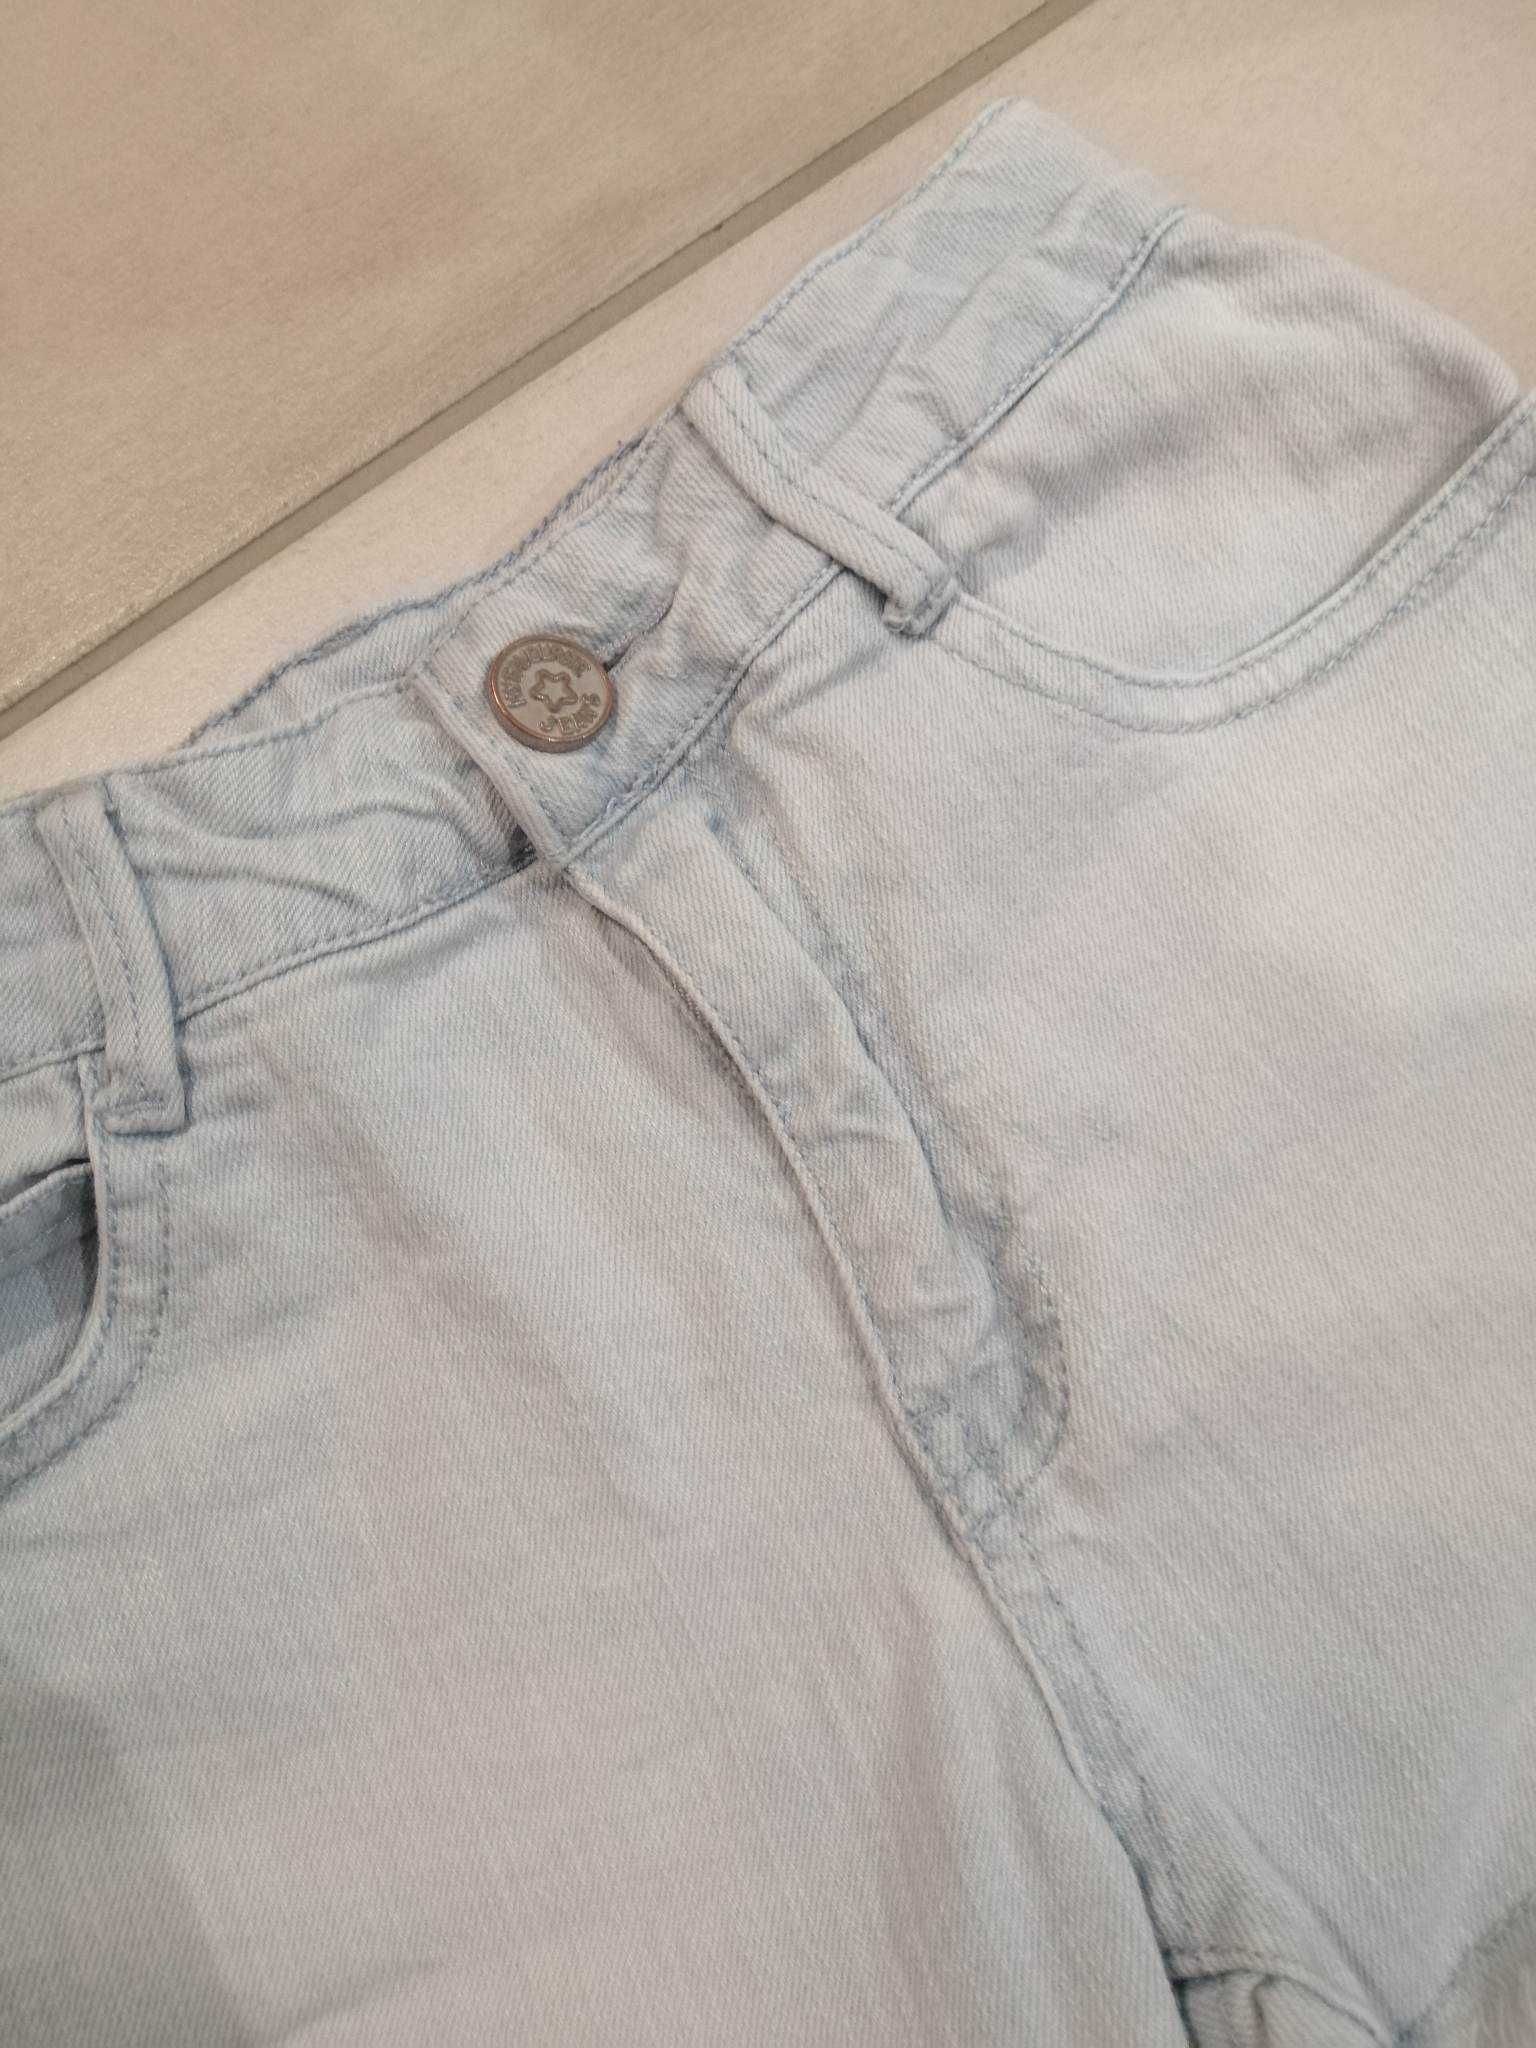 RESERVED szorty spodenki krótkie jeans na 140 cm jak nowe jasne